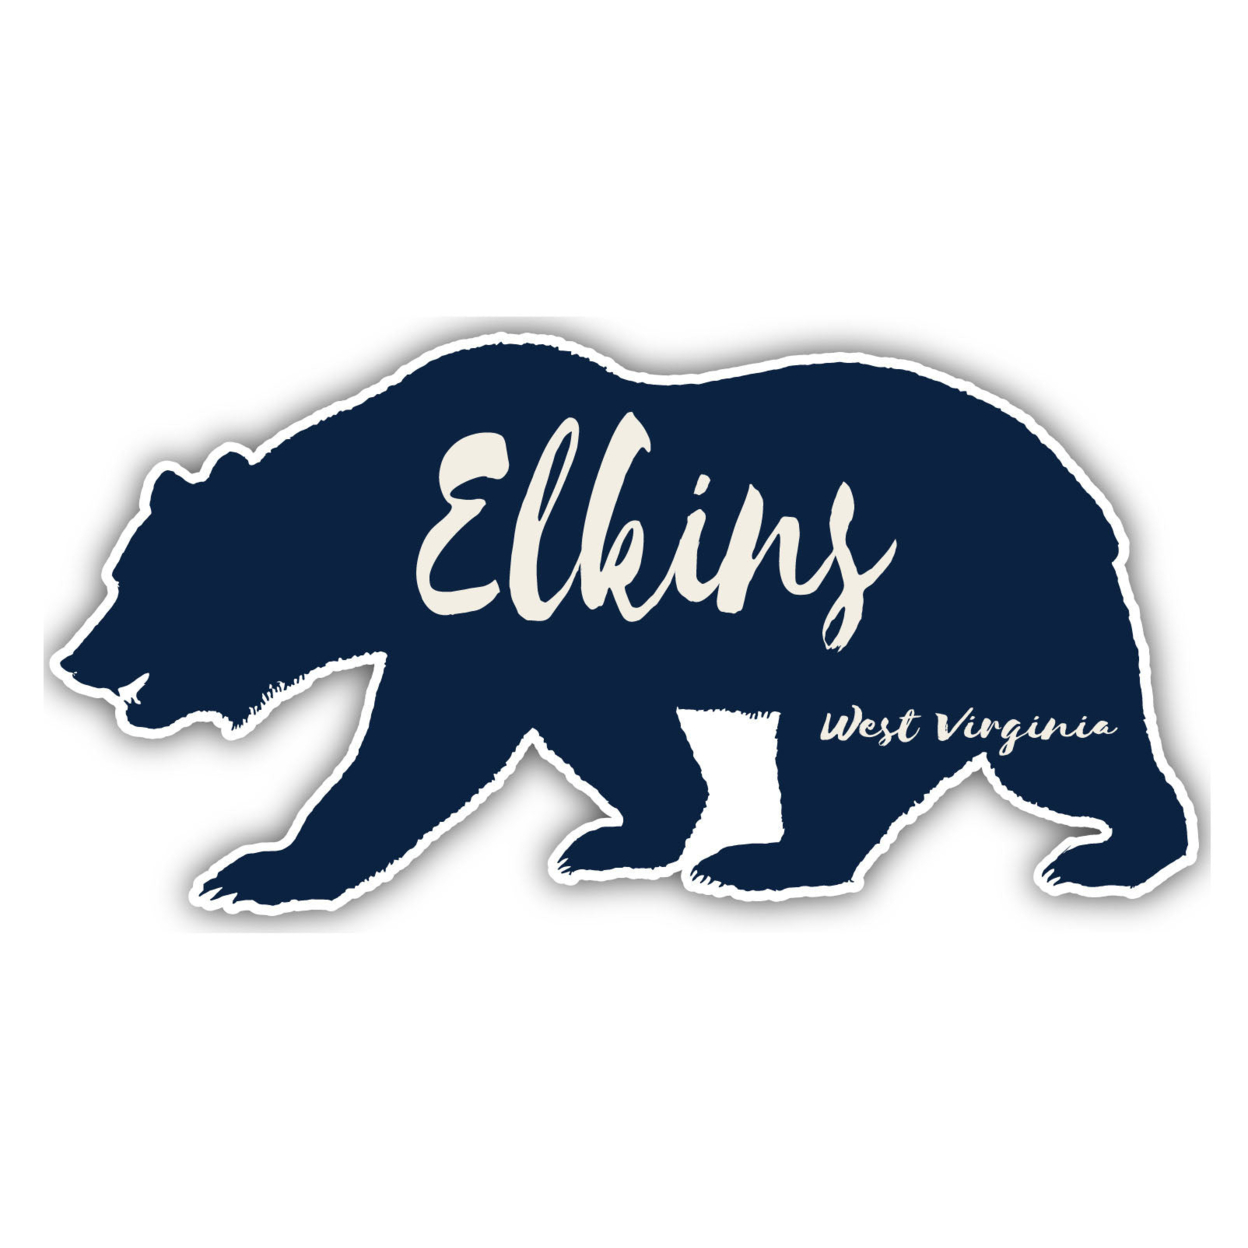 Elkins West Virginia Souvenir Decorative Stickers (Choose Theme And Size) - Single Unit, 8-Inch, Tent